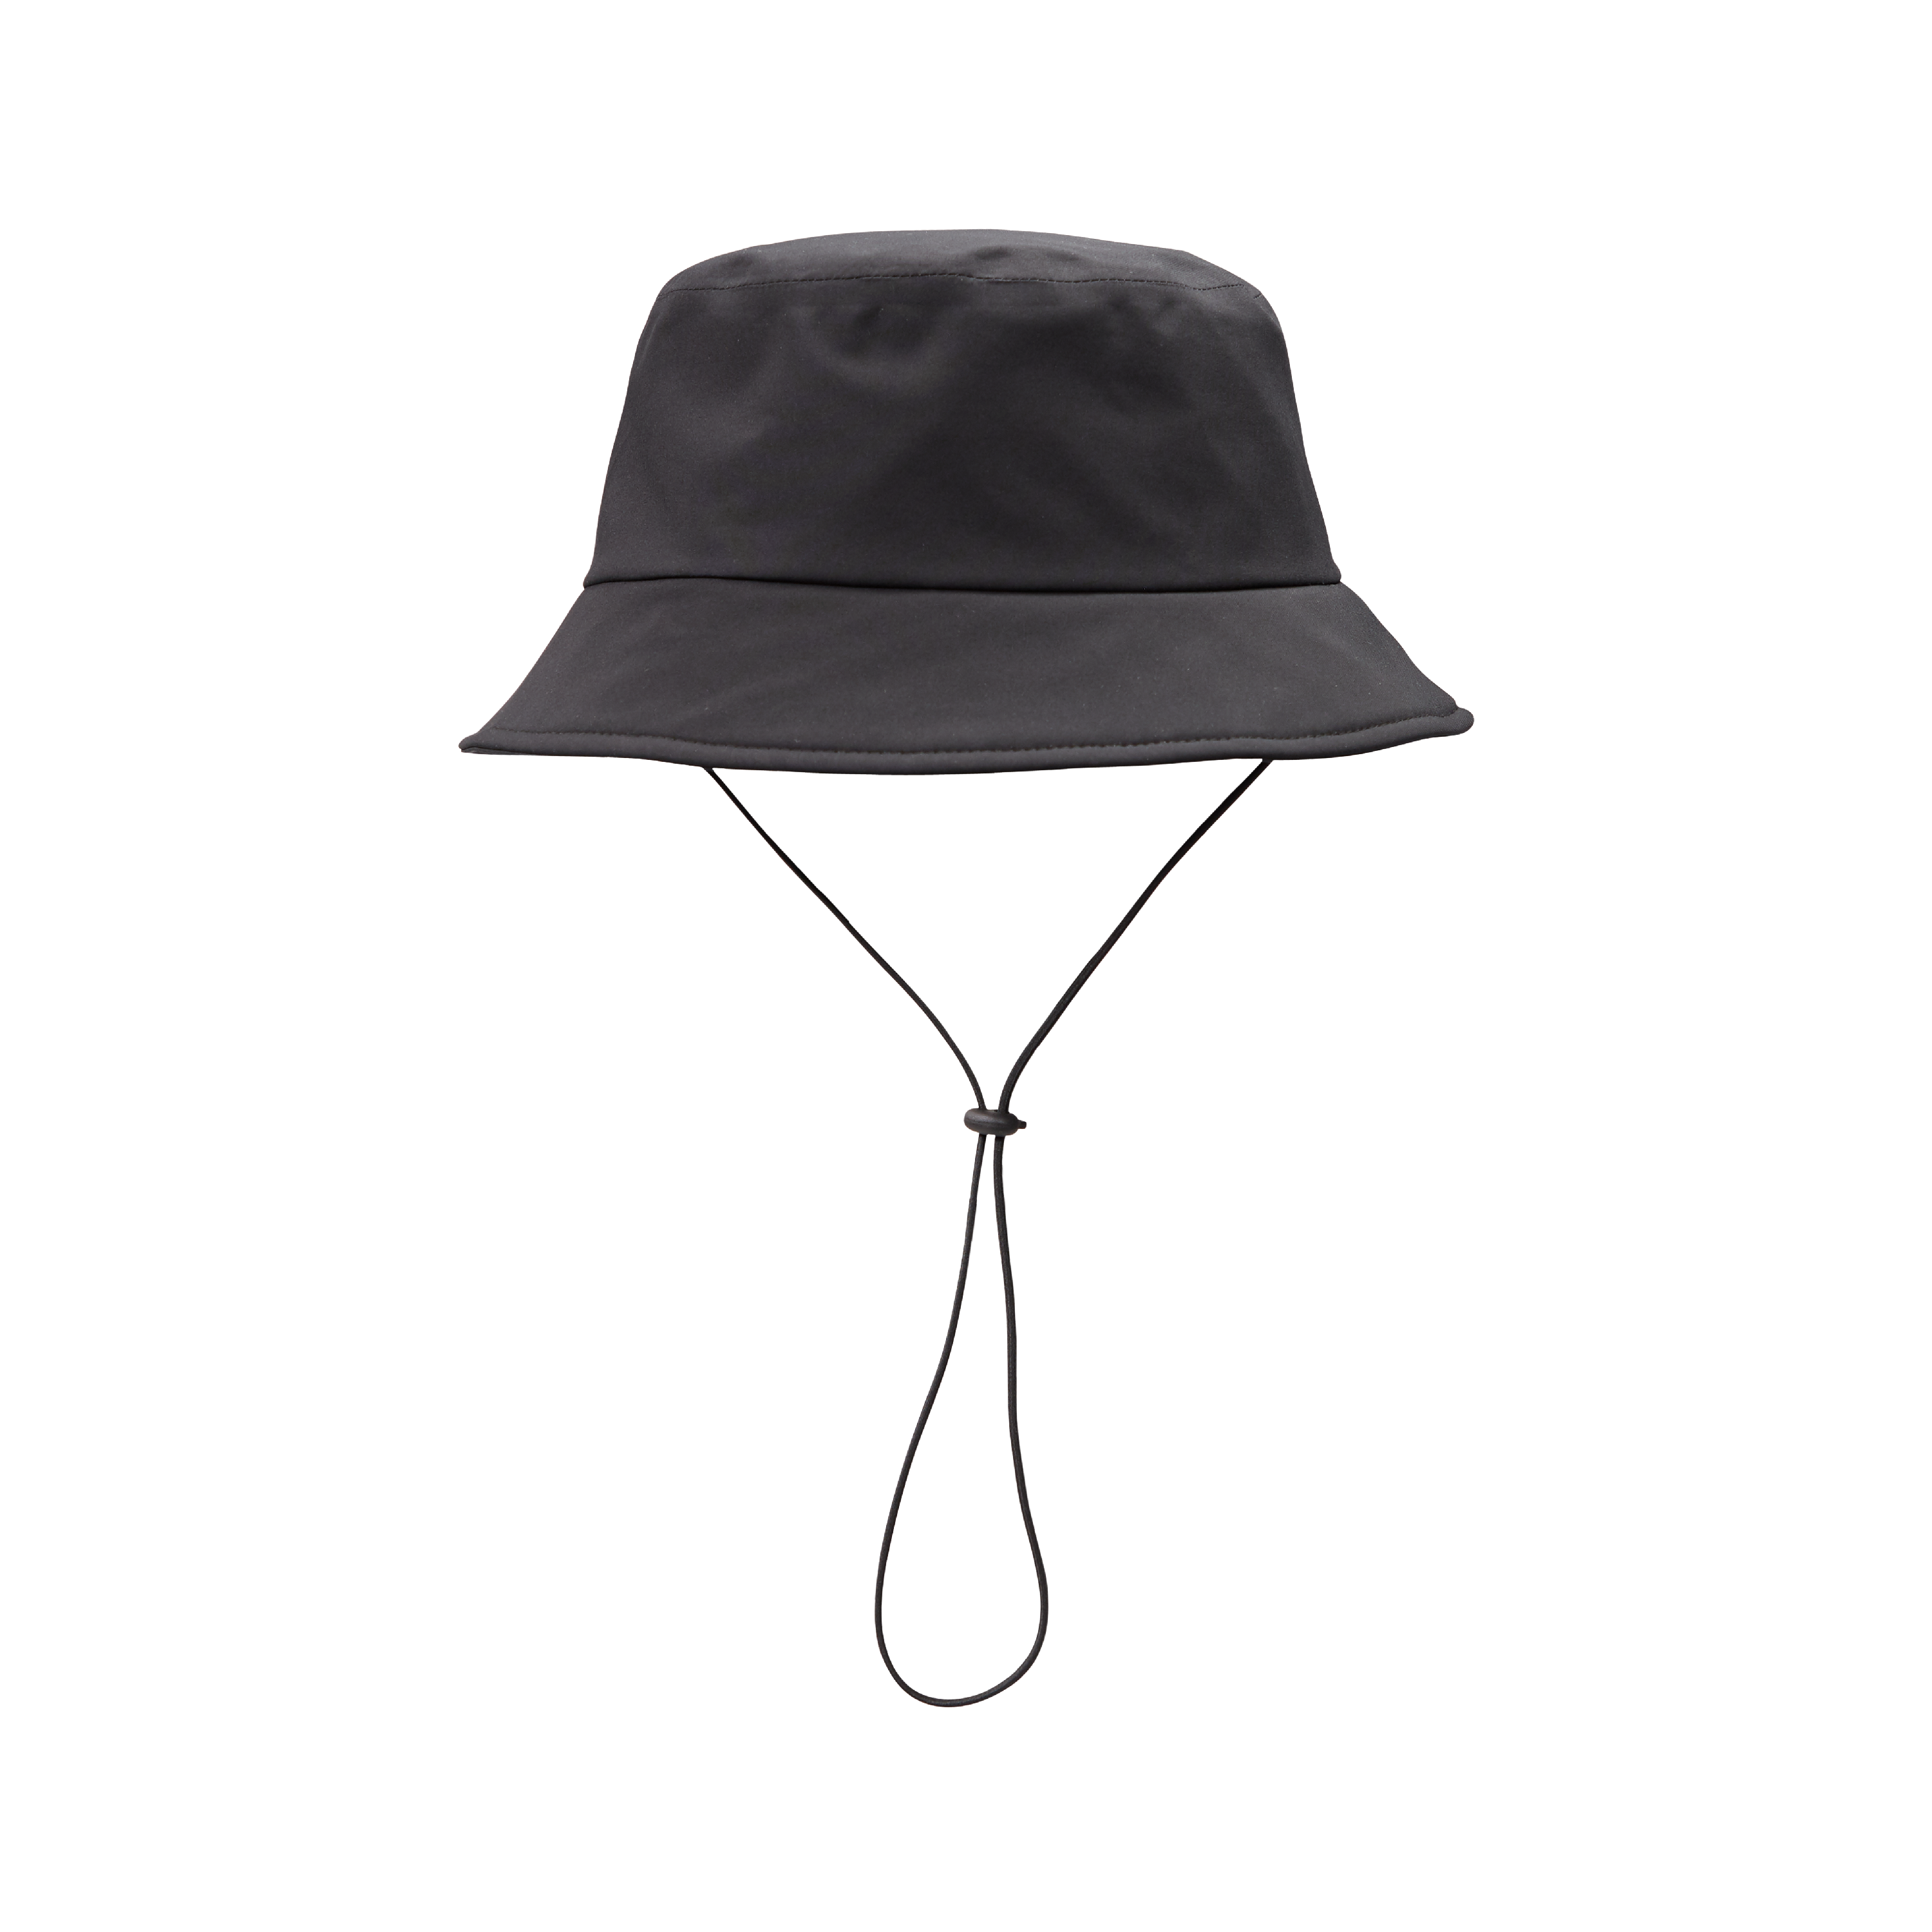 Explorer Bucket Hat